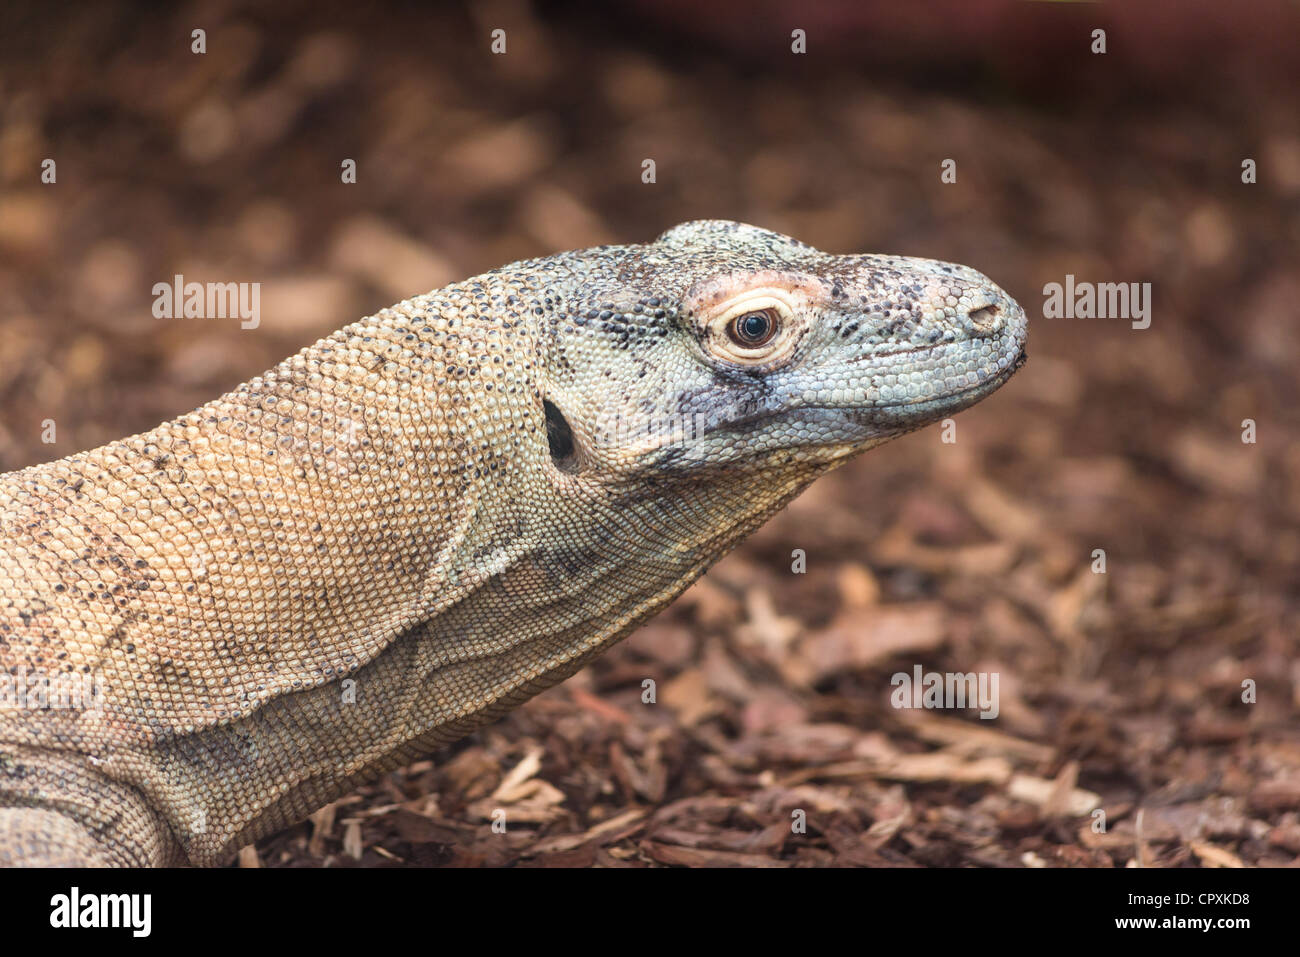 Komodo dragon, Varanus komodoensis. Stock Photo